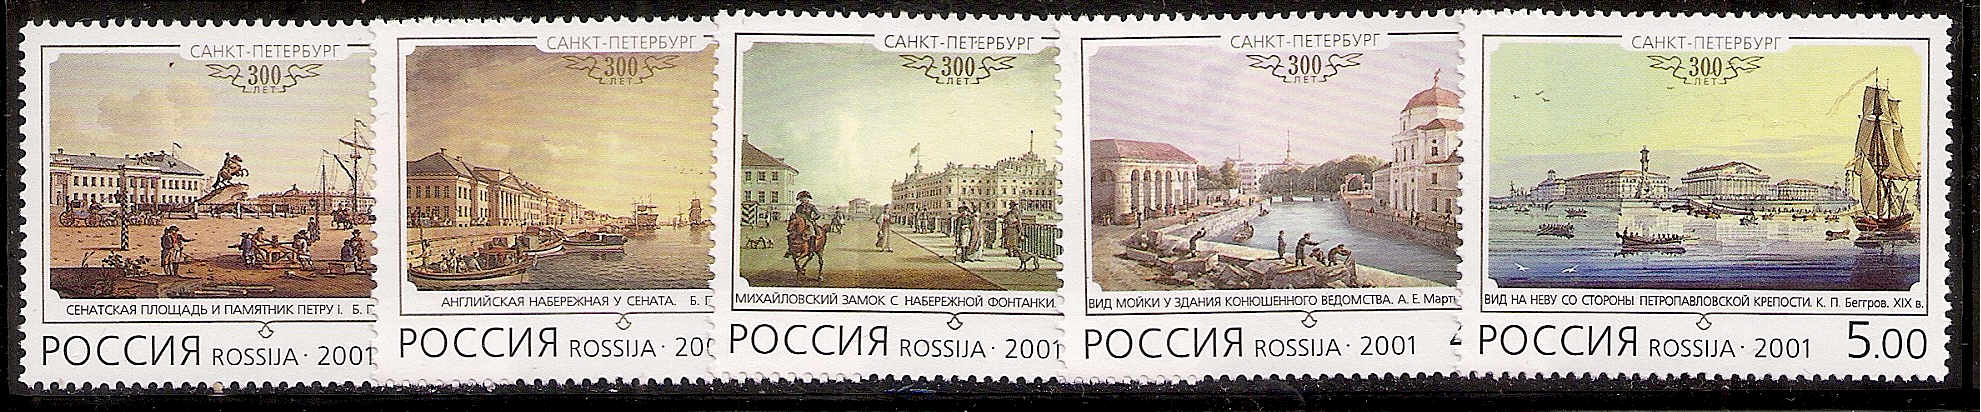 Soviet Russia - 1996-2014 Year 2001 Scott 6628-32 